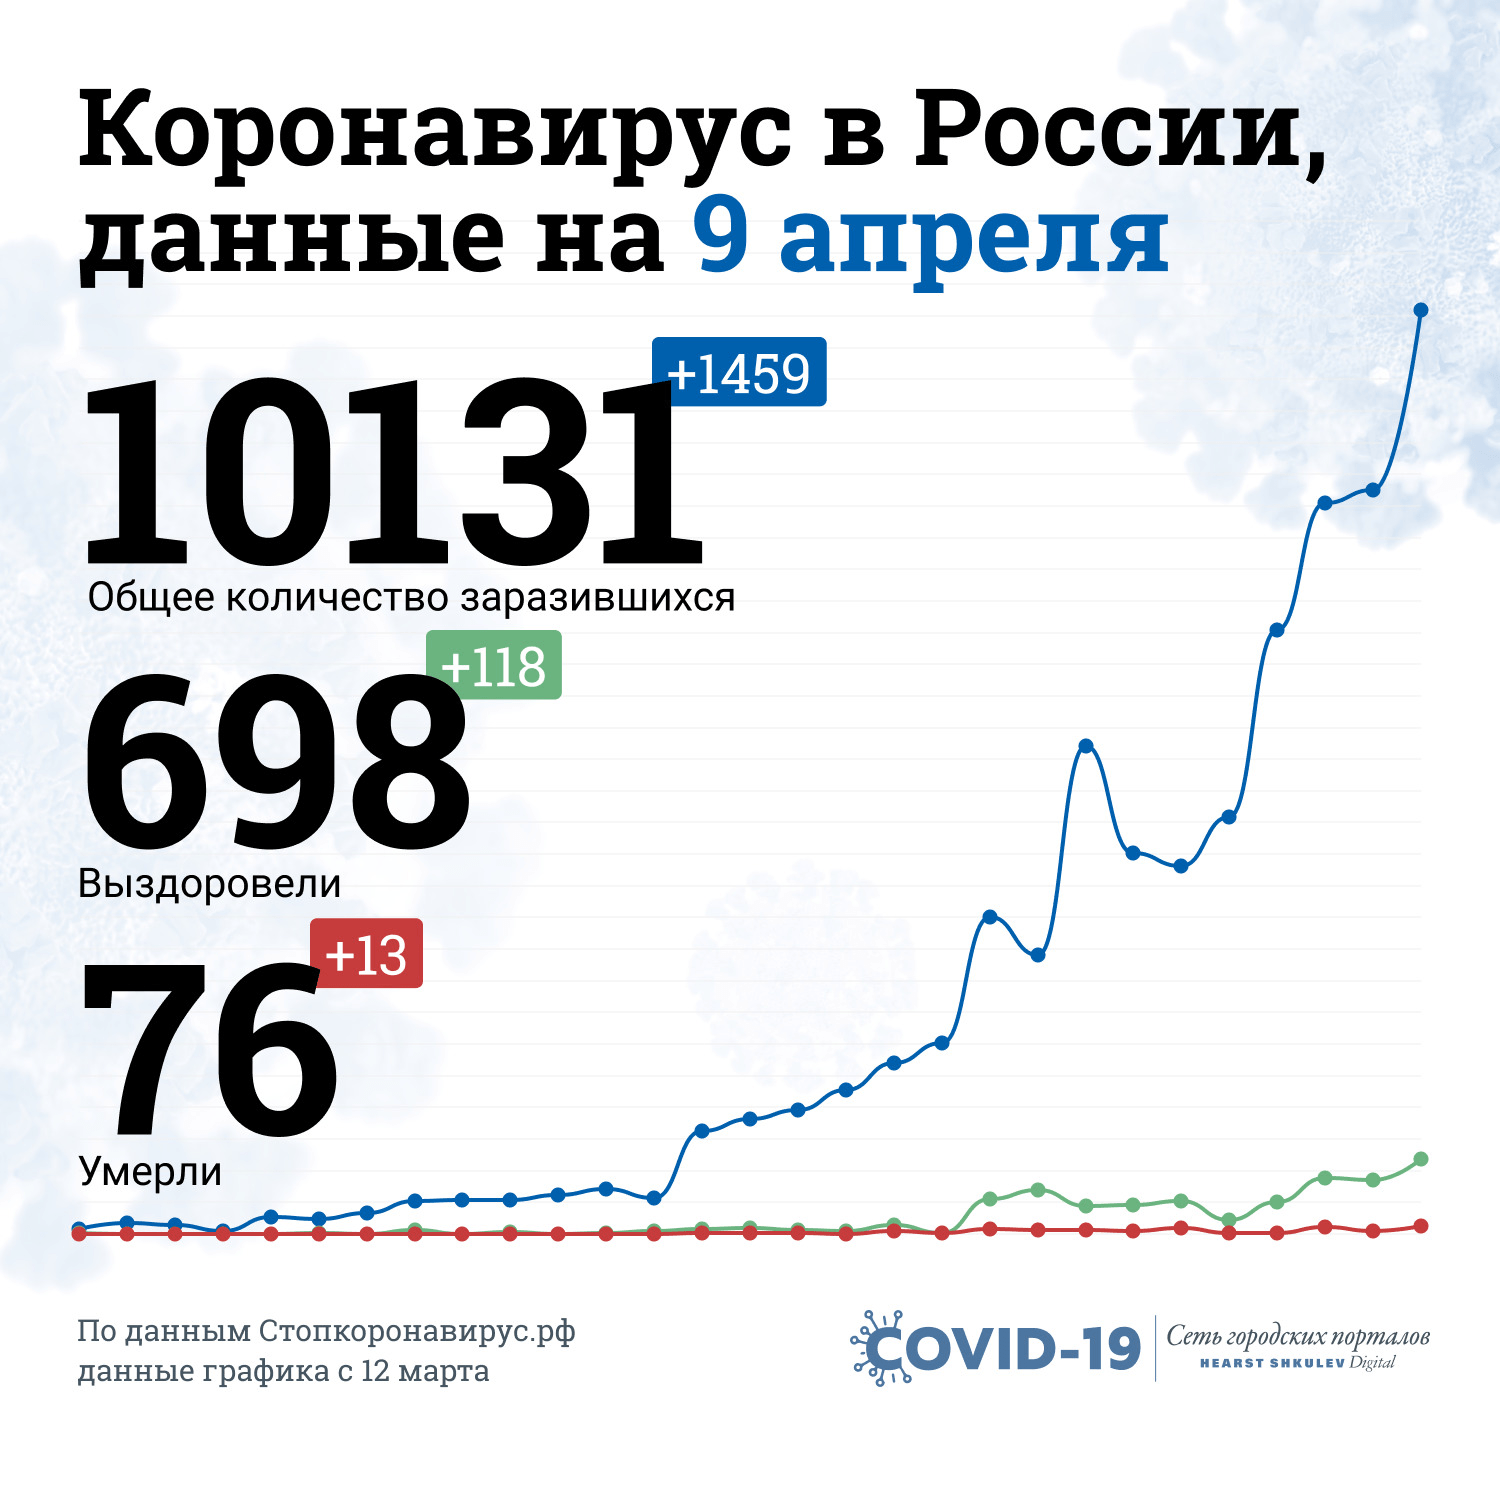 Количество зараженных в России перевалило за 10 тысяч